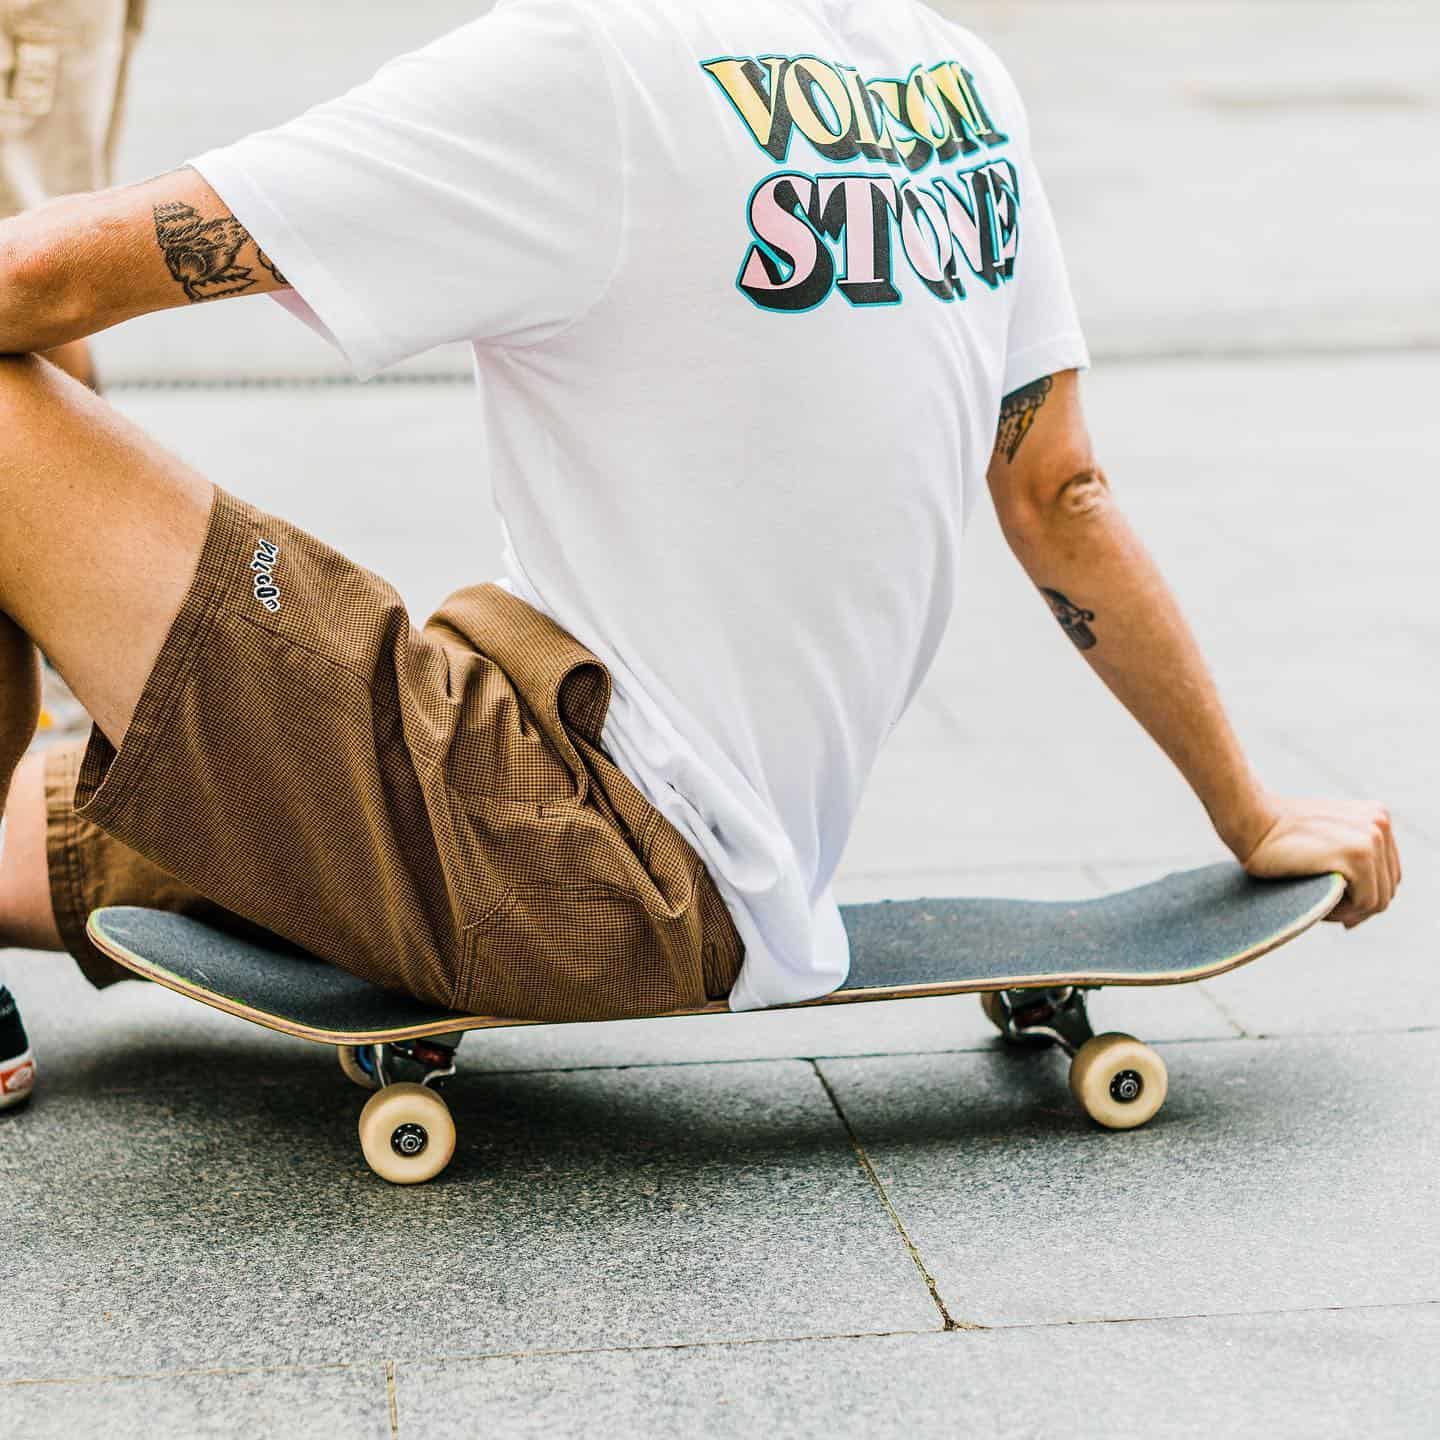 man sittting on a skate board